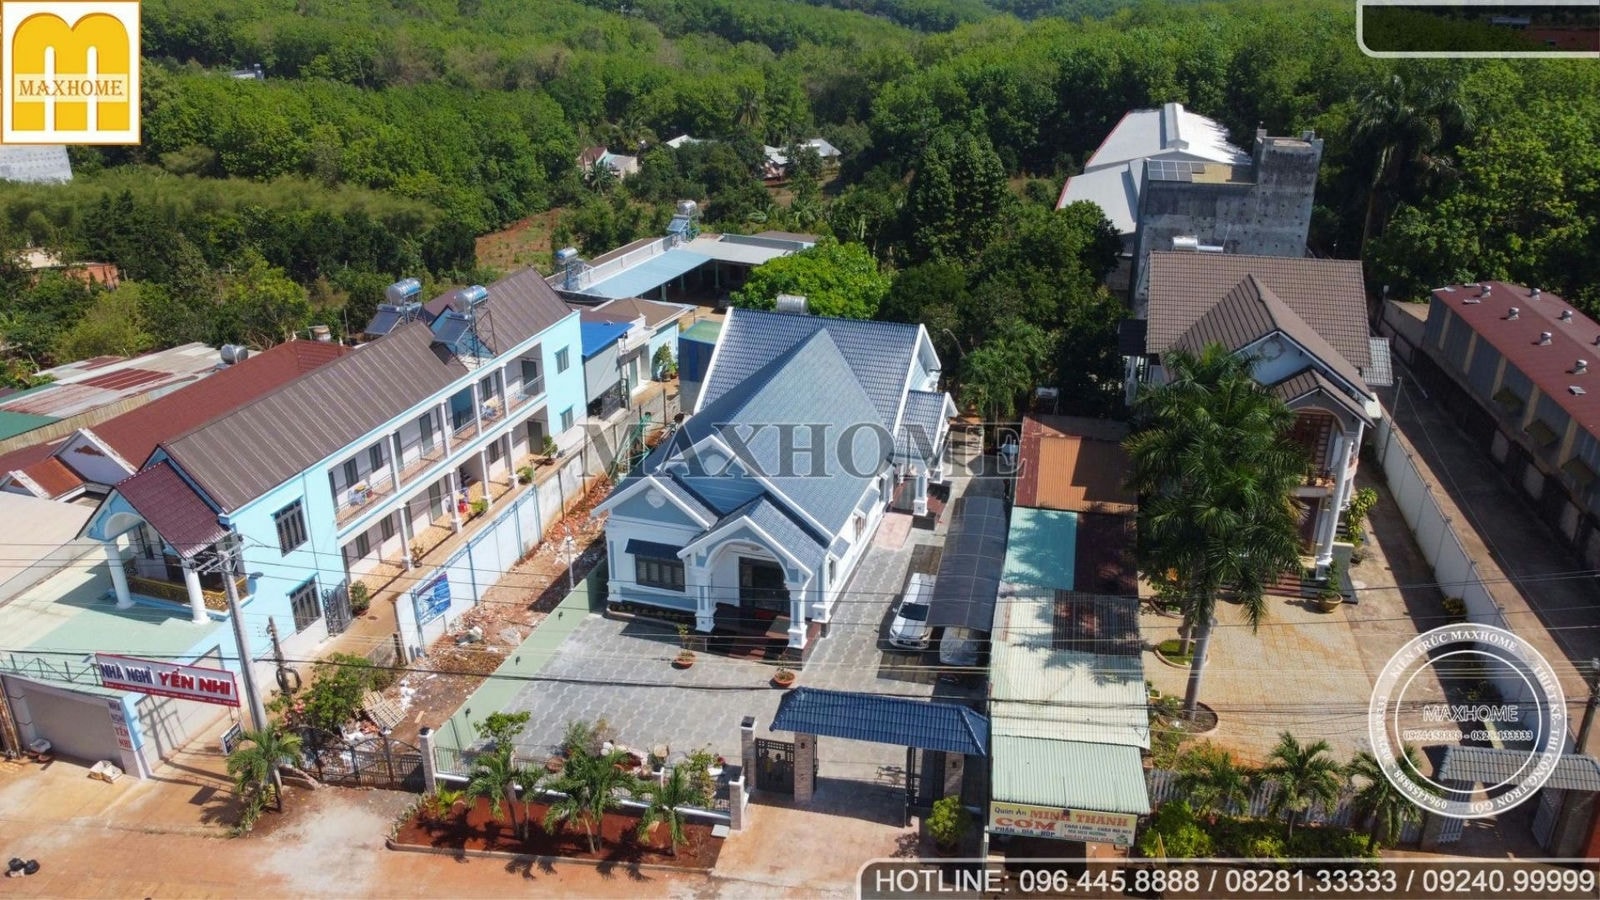 Thực tế công trình nhà vườn tâm đắc nhất của Maxhome tại Bình Phước